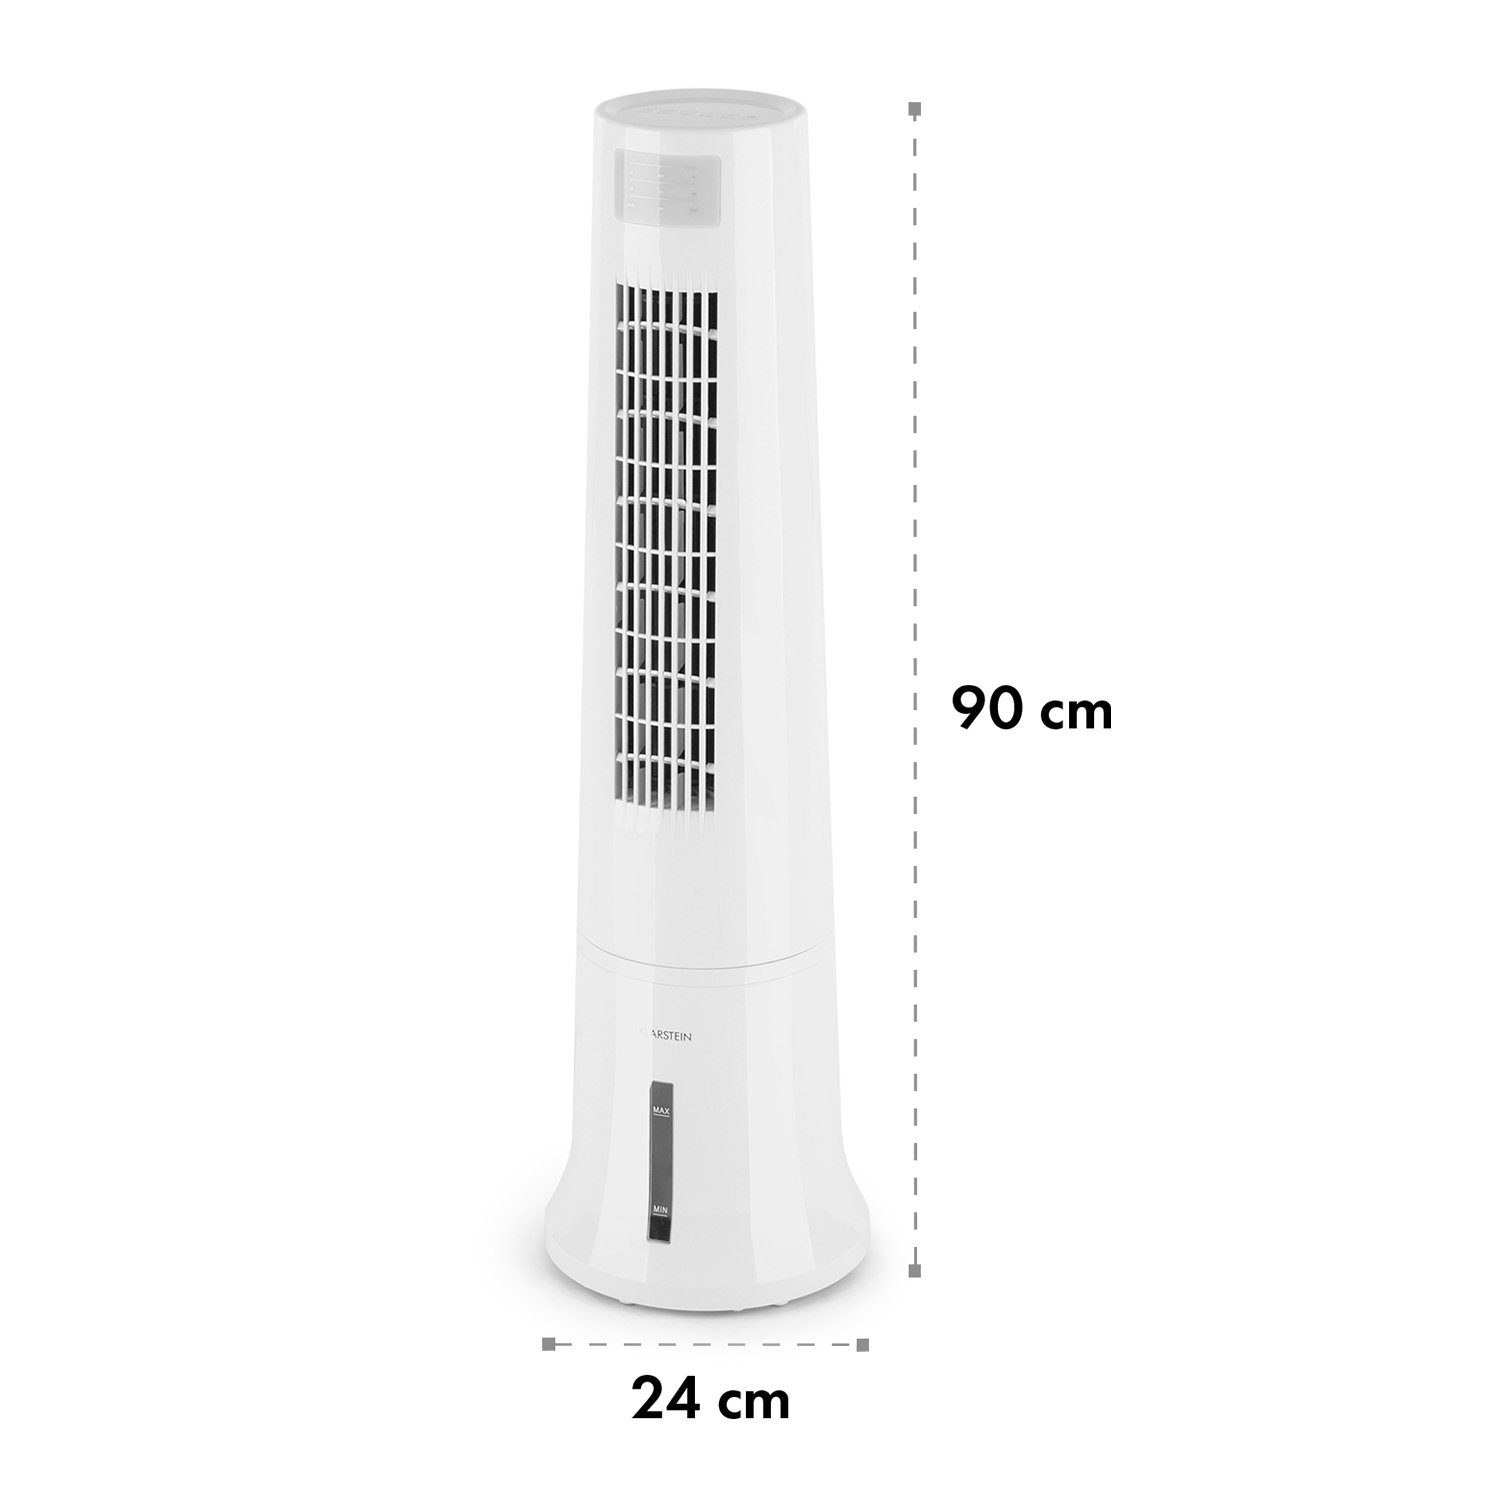 Eis & Abluftschlauch 3-in-1 Ventilatorkombigerät mobil Wasserkühlung Luftkühler, Weiß Klarstein mit ohne Highrise Klimagerät